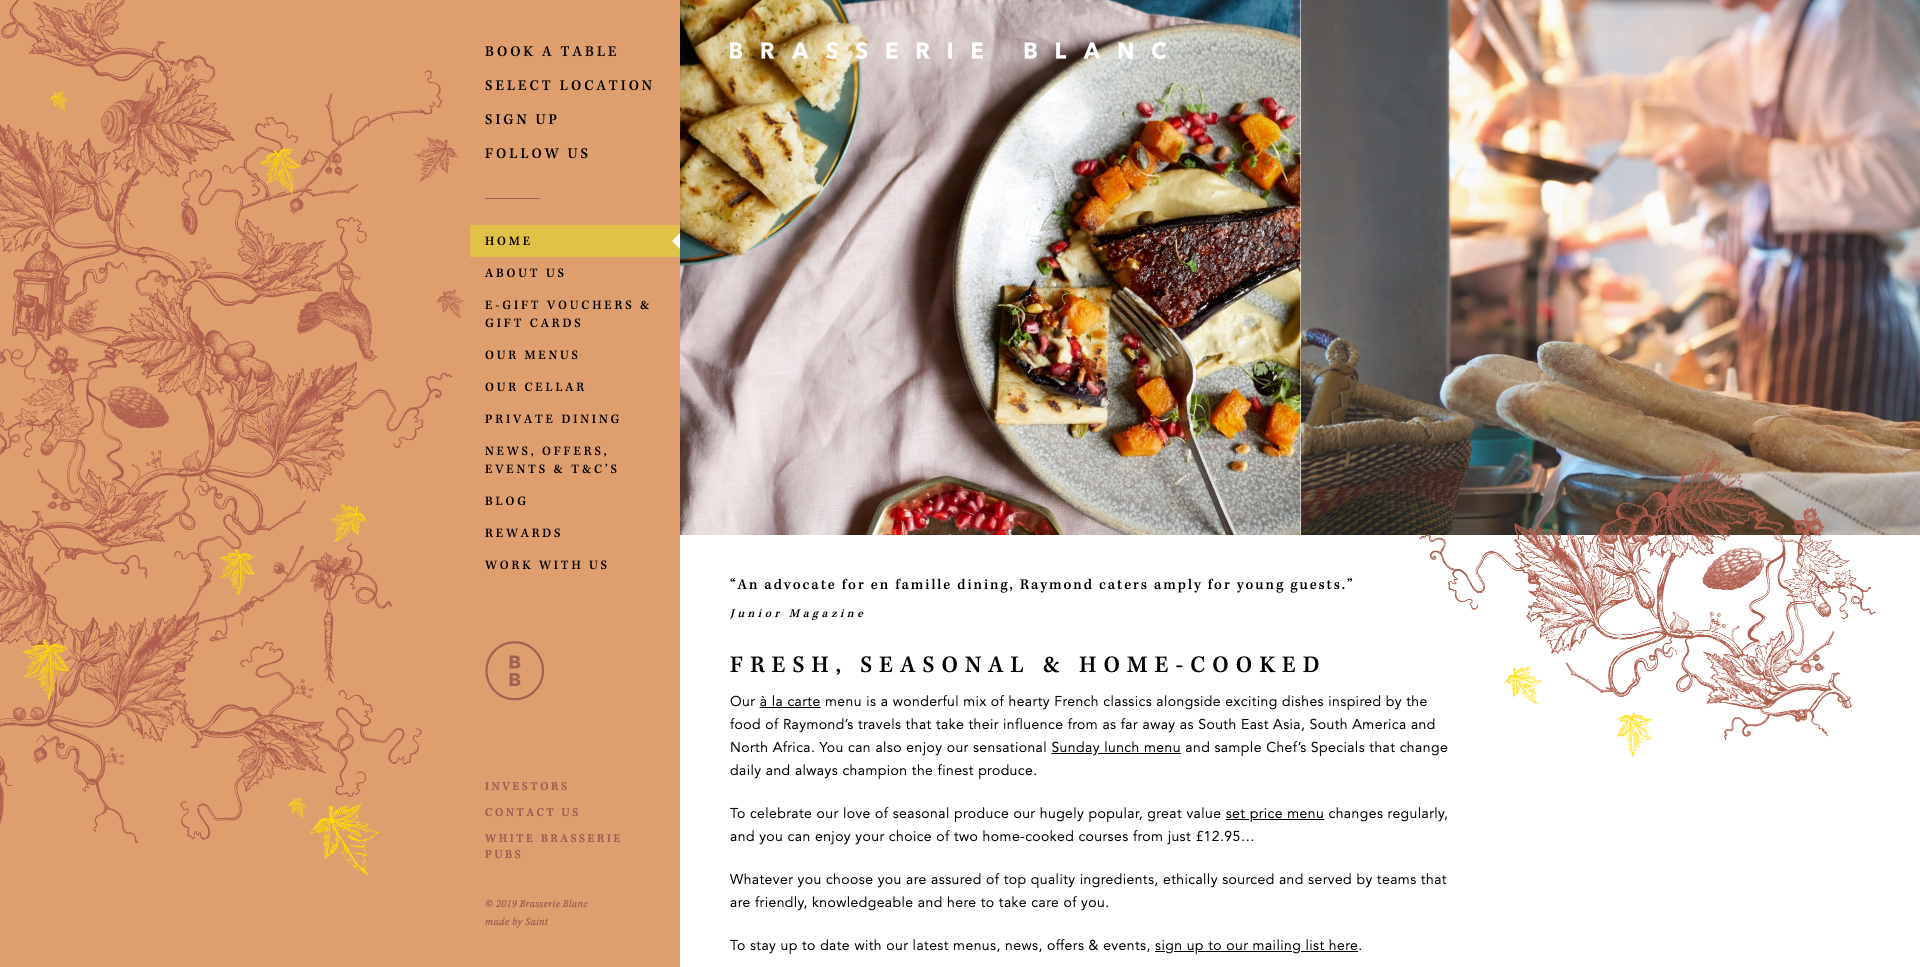 Brasserie Blanc Restaurant Website Design